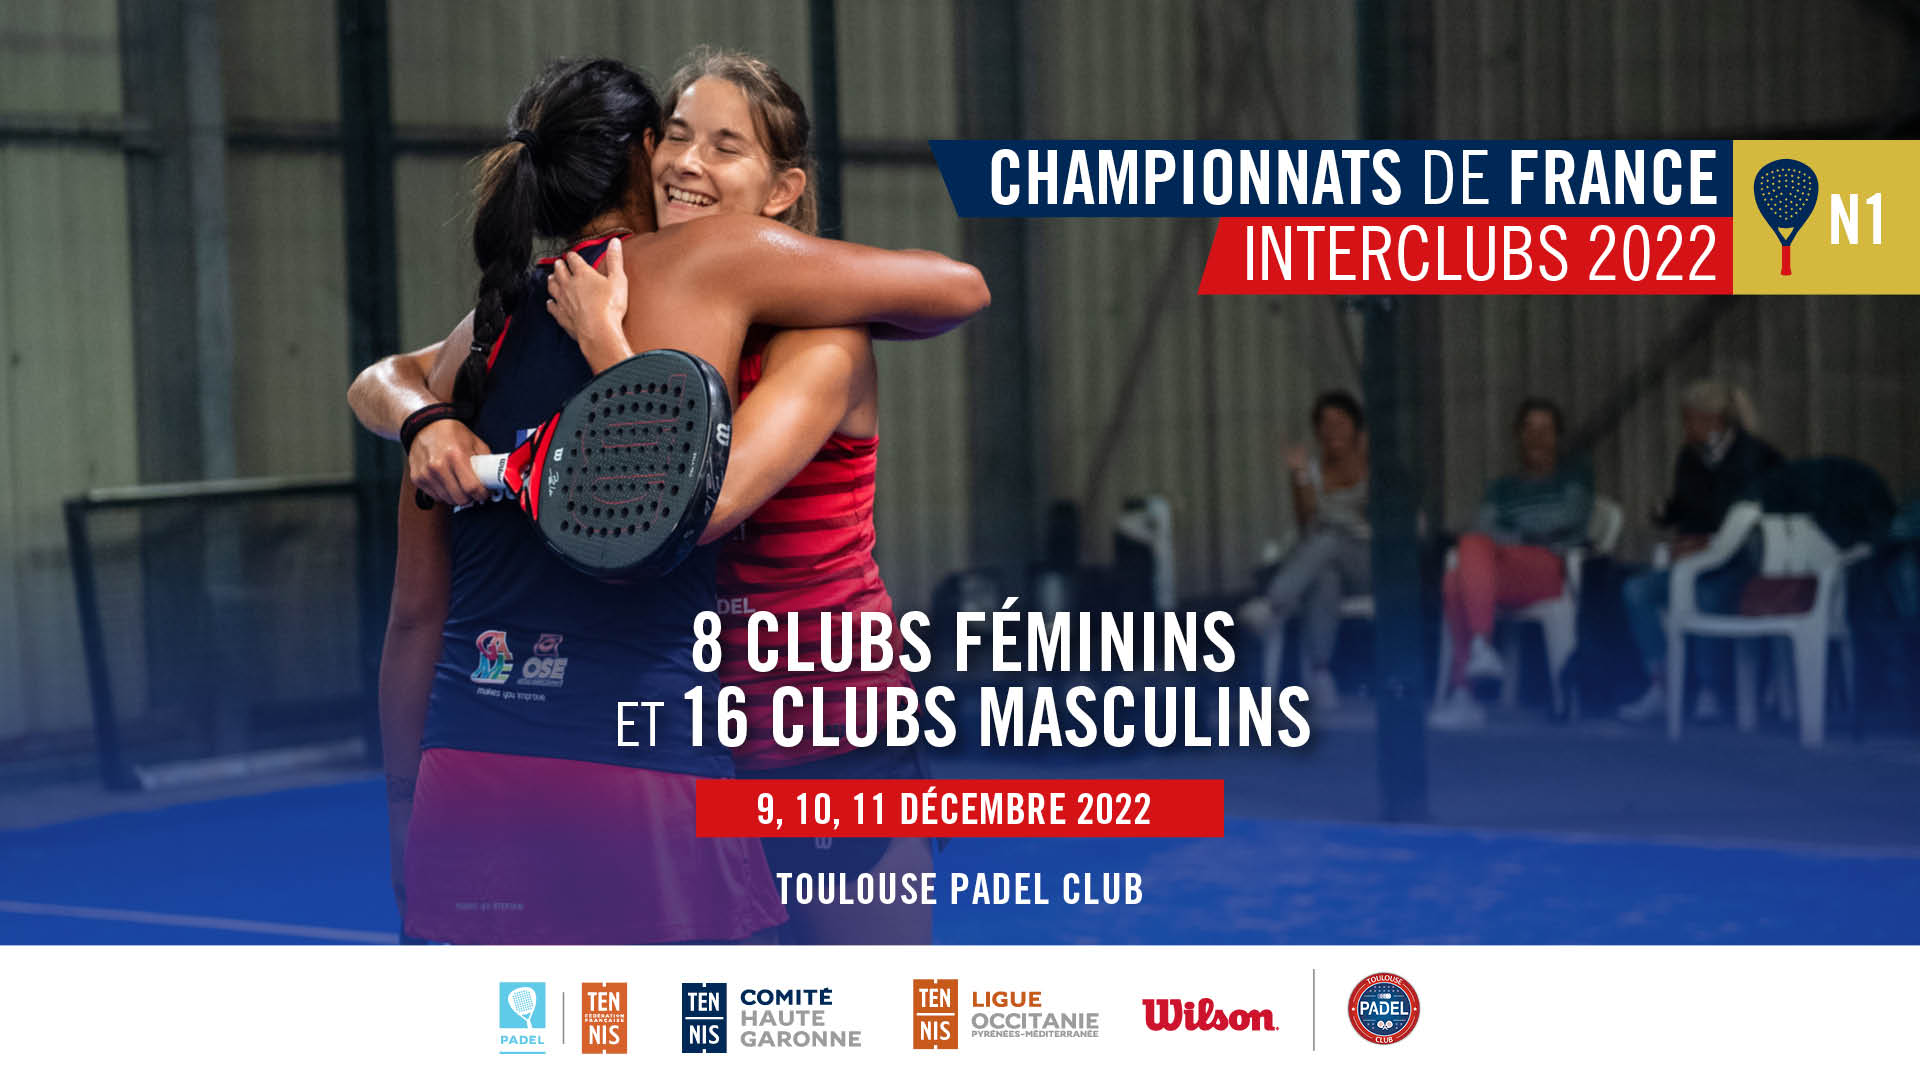 Französische Interclub N1-Meisterschaften: Ergebnisse, Programme und Live